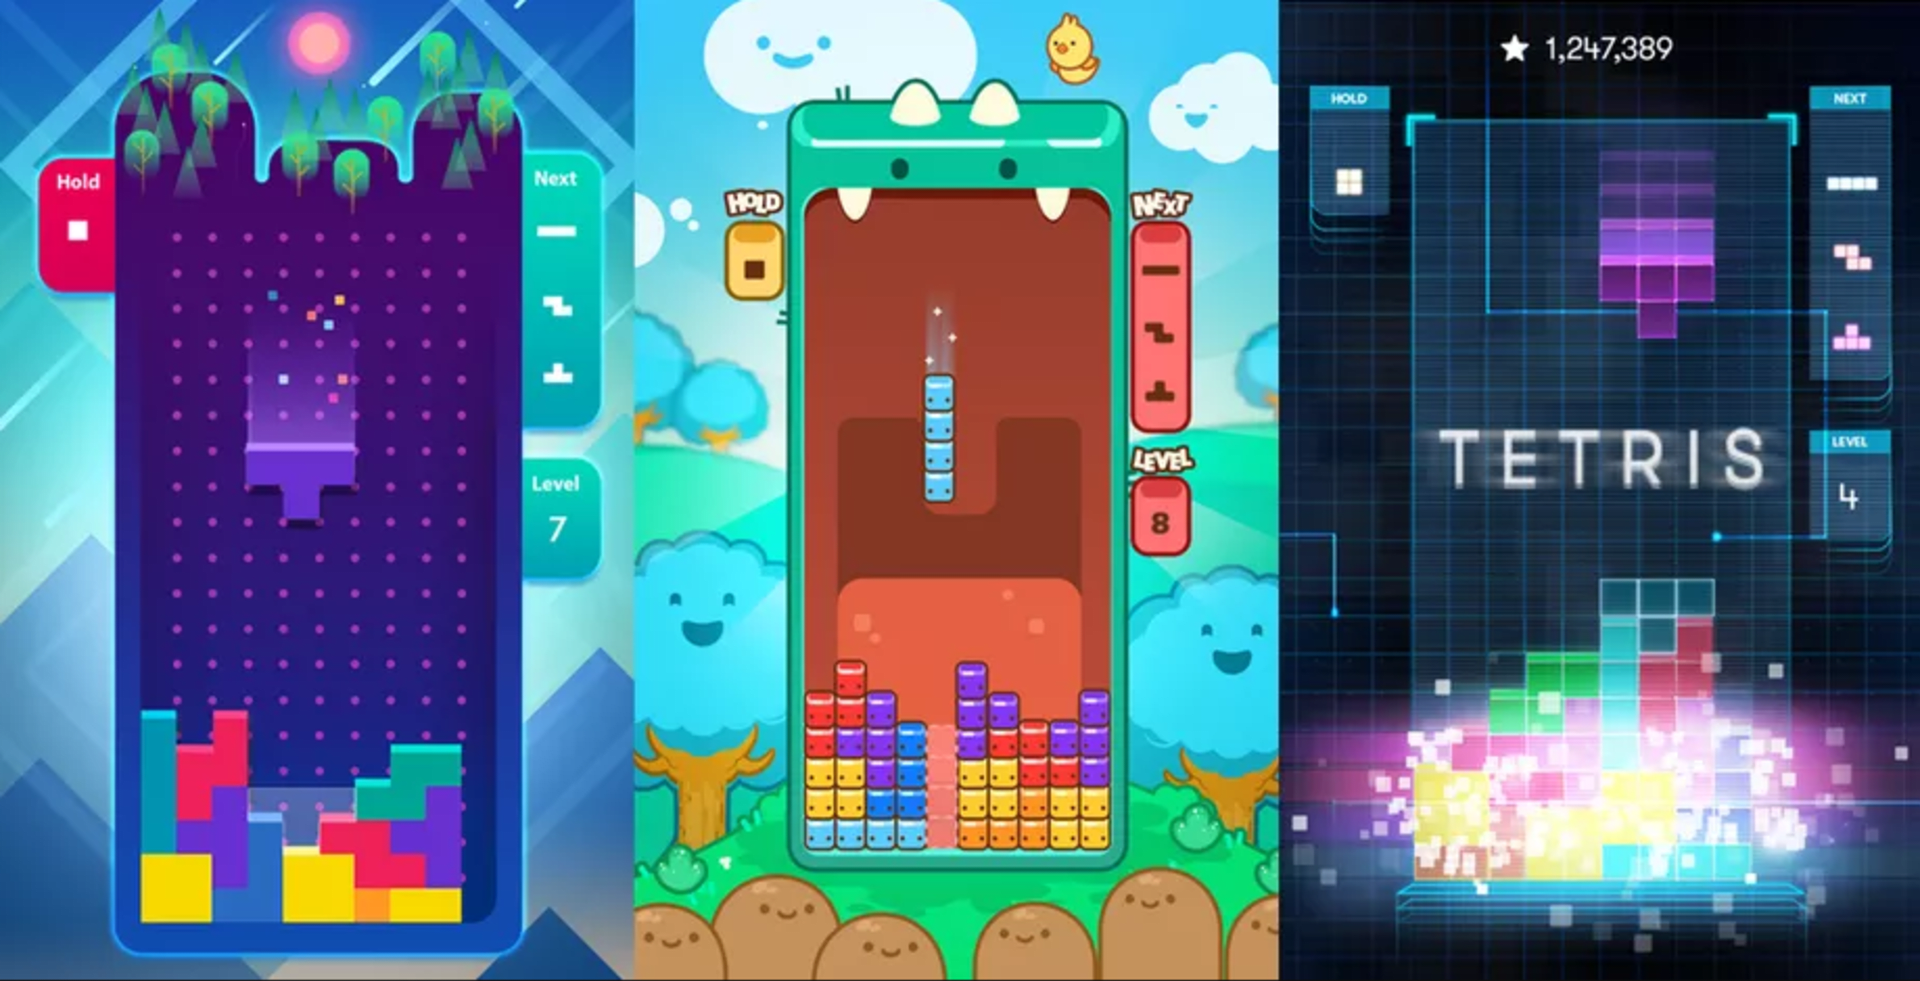 Tetris dostane na mobilech novou tvář